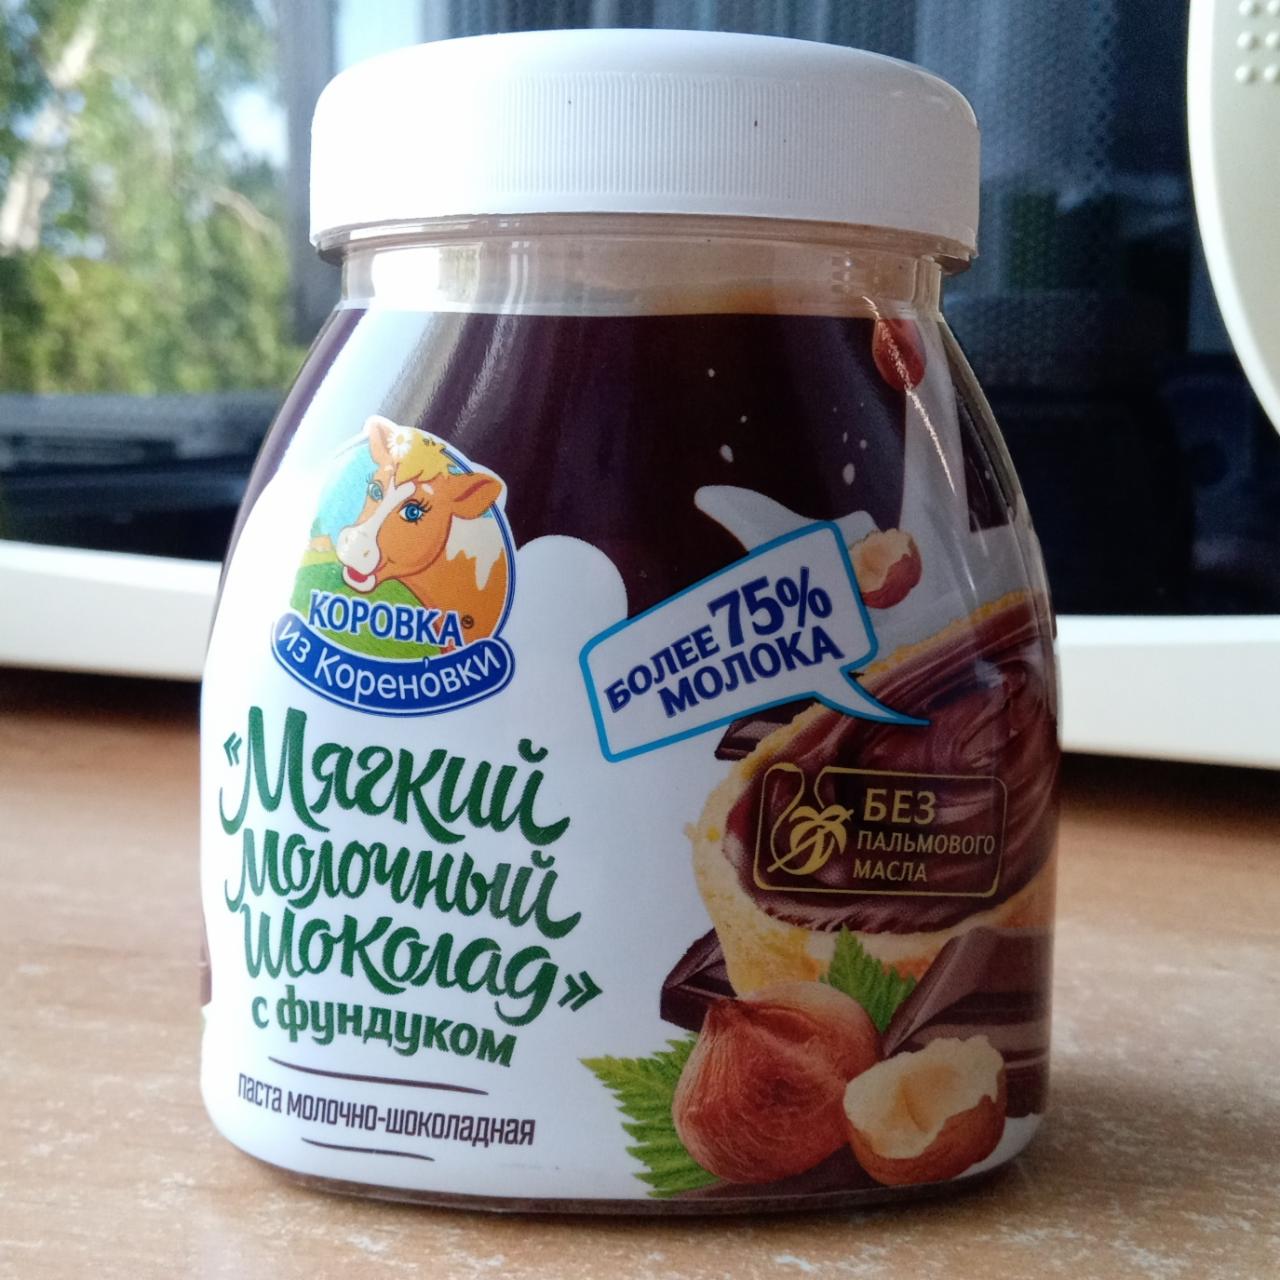 Фото - Паста молочно-шоколадная с фундуком Коровка из Кореновки